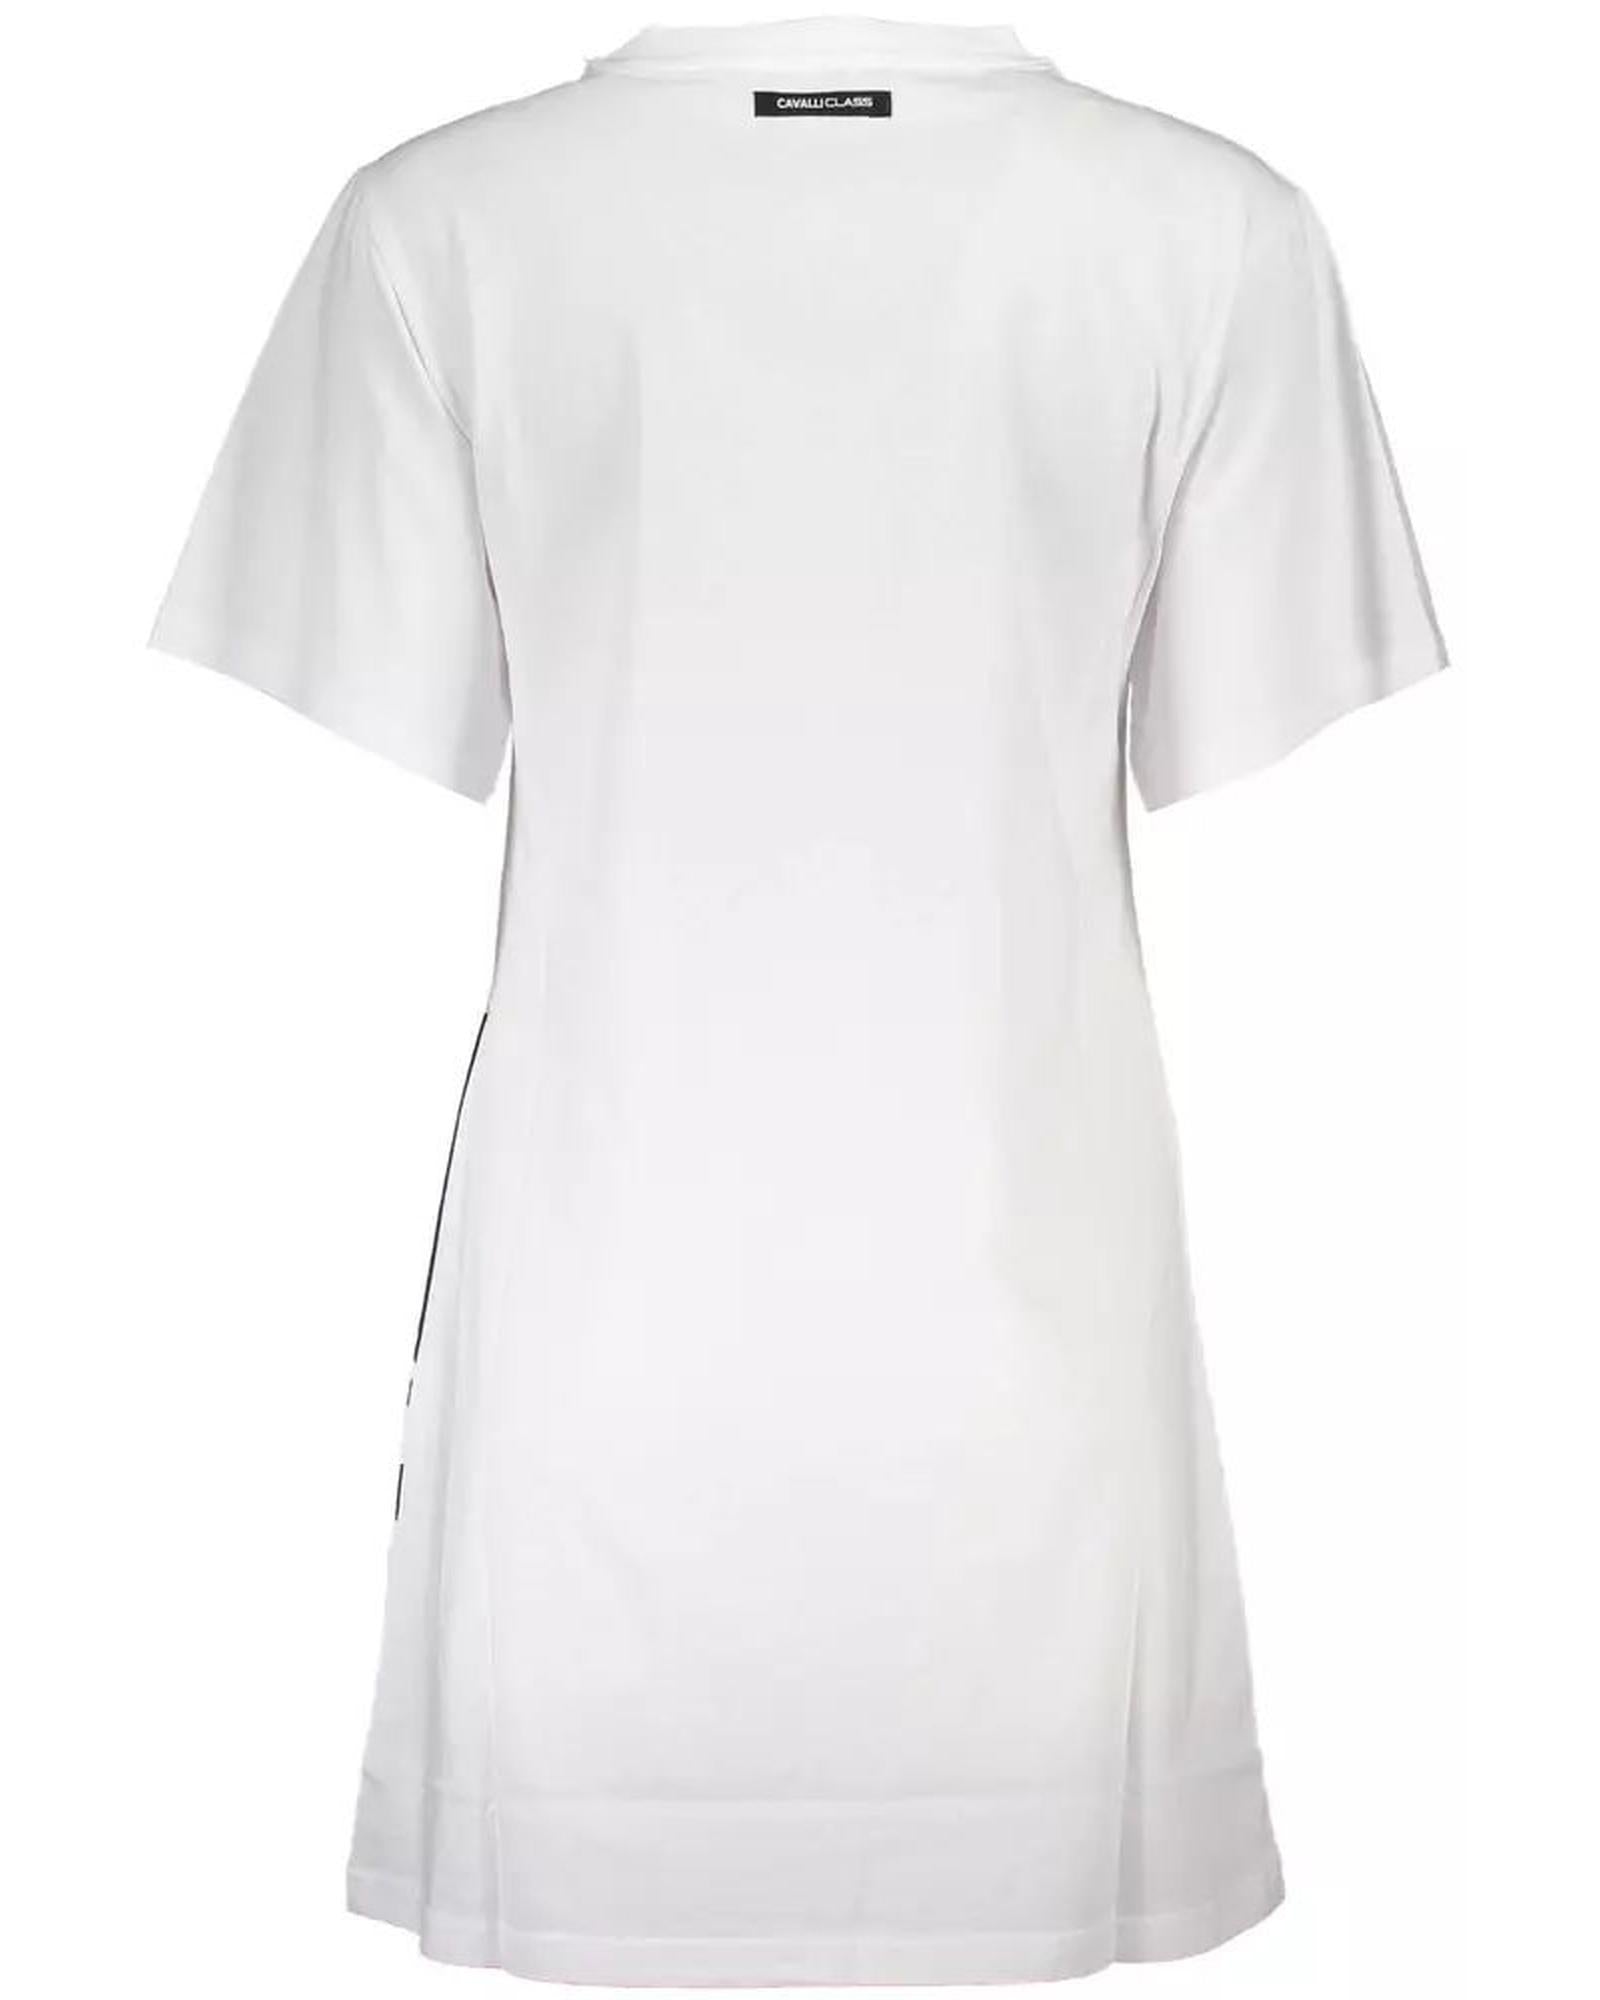 Women's White Cotton Dress - M